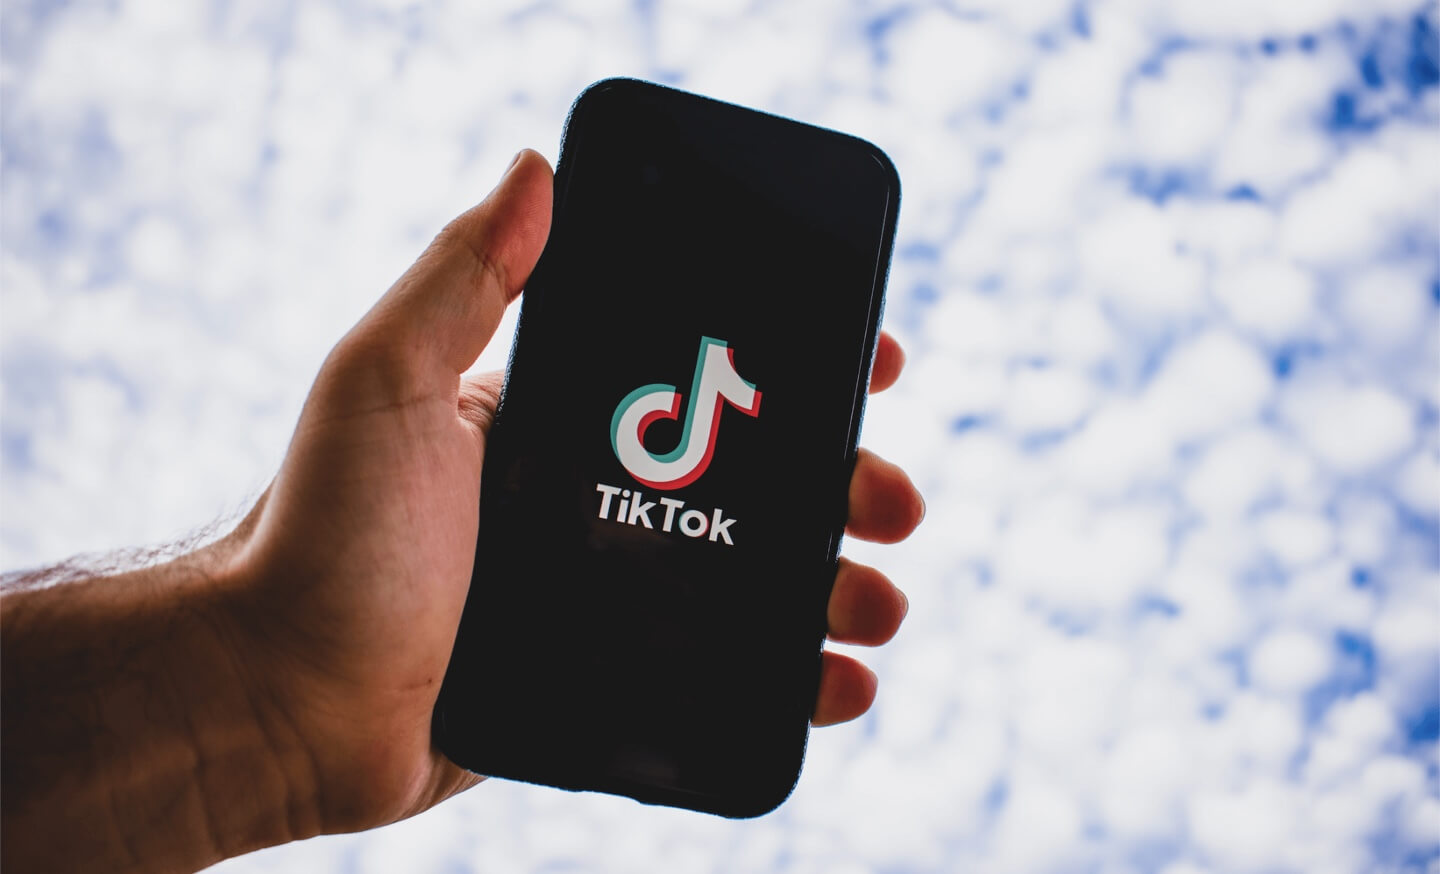 TikTok logo on mobile device